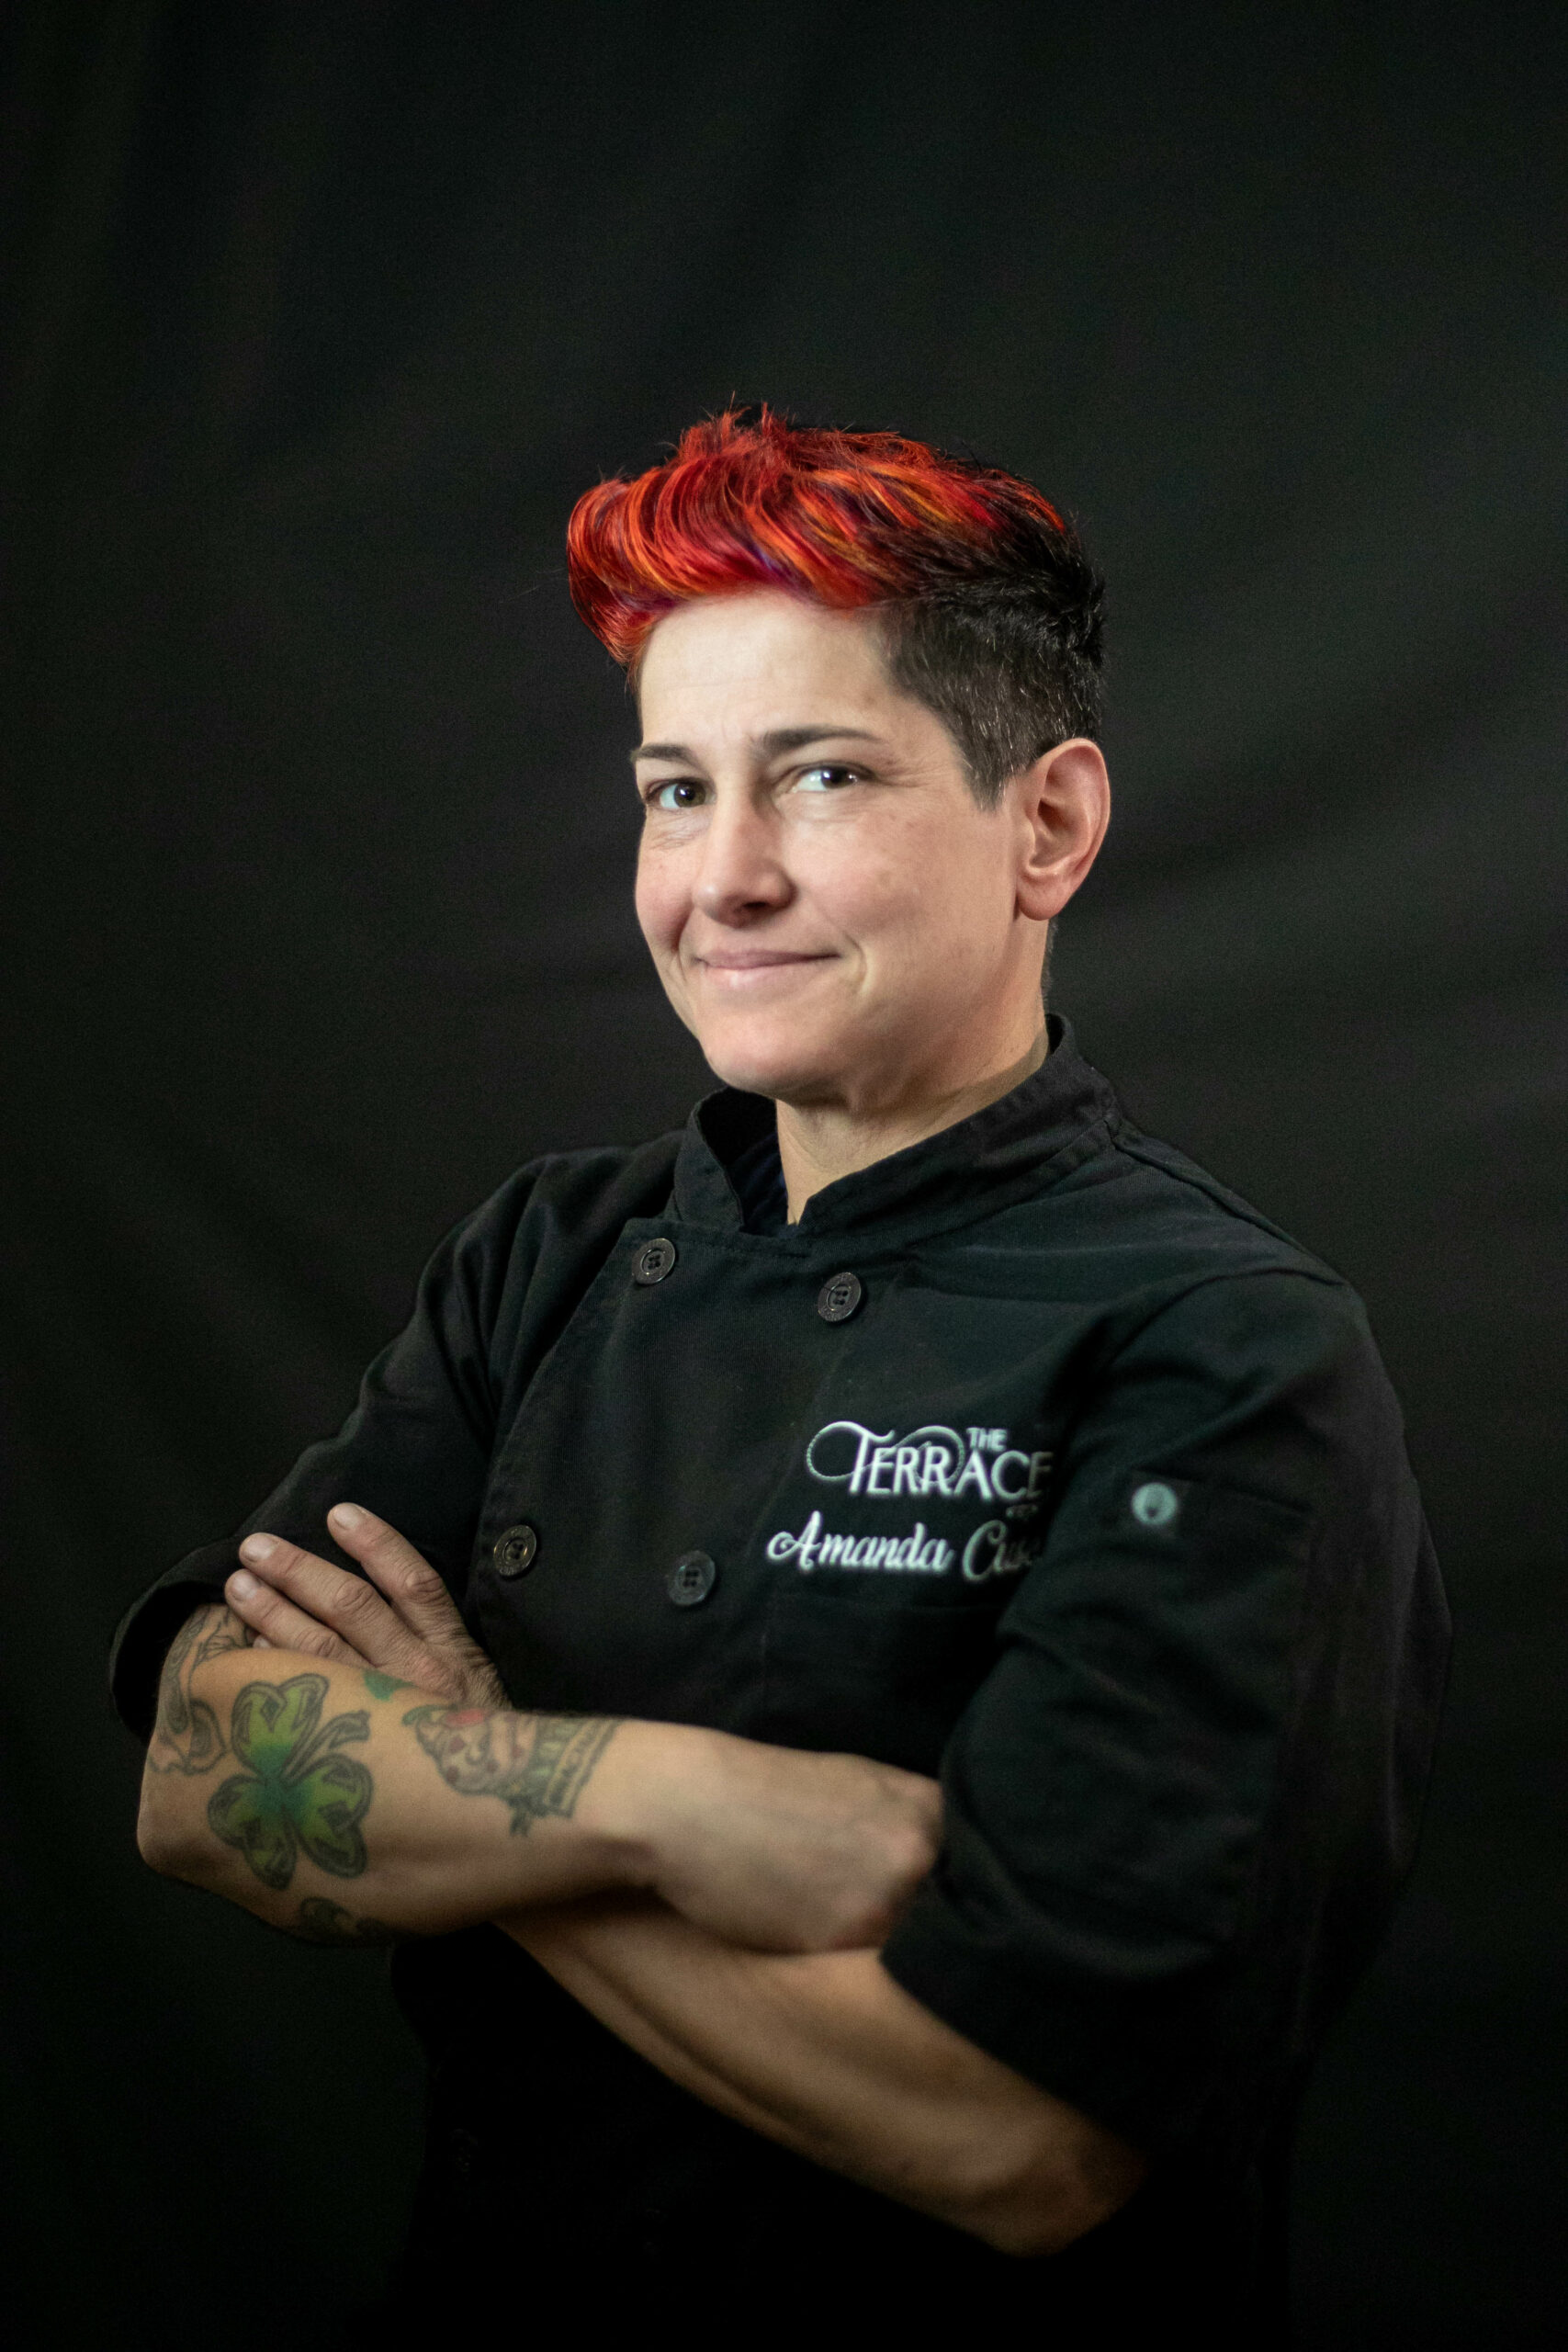 Chef Amanda Cusey